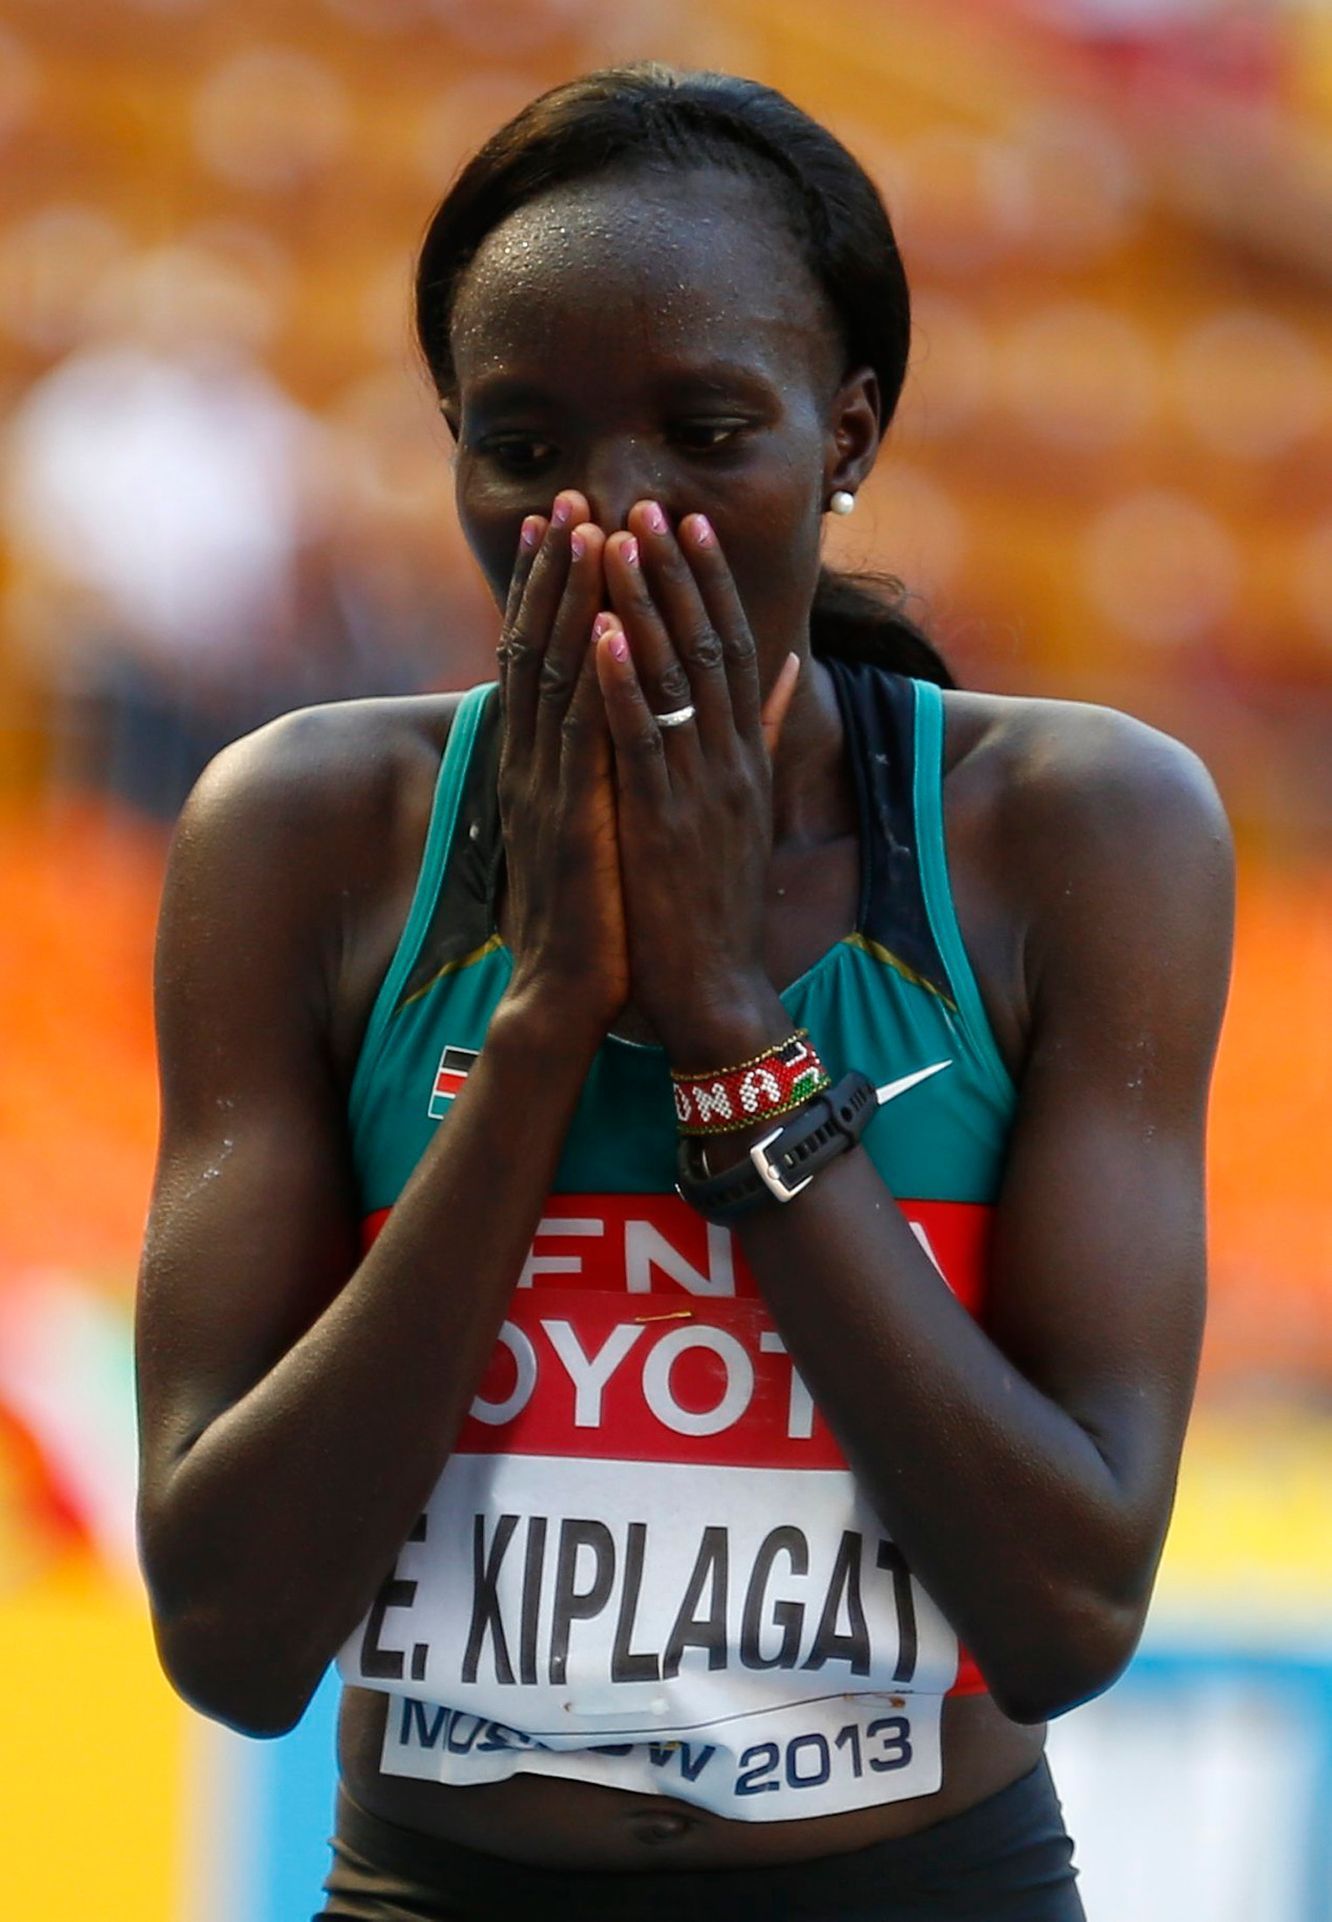 MS v atletice 2013, maraton žen: Edna Ngeringwony Kiplagatová